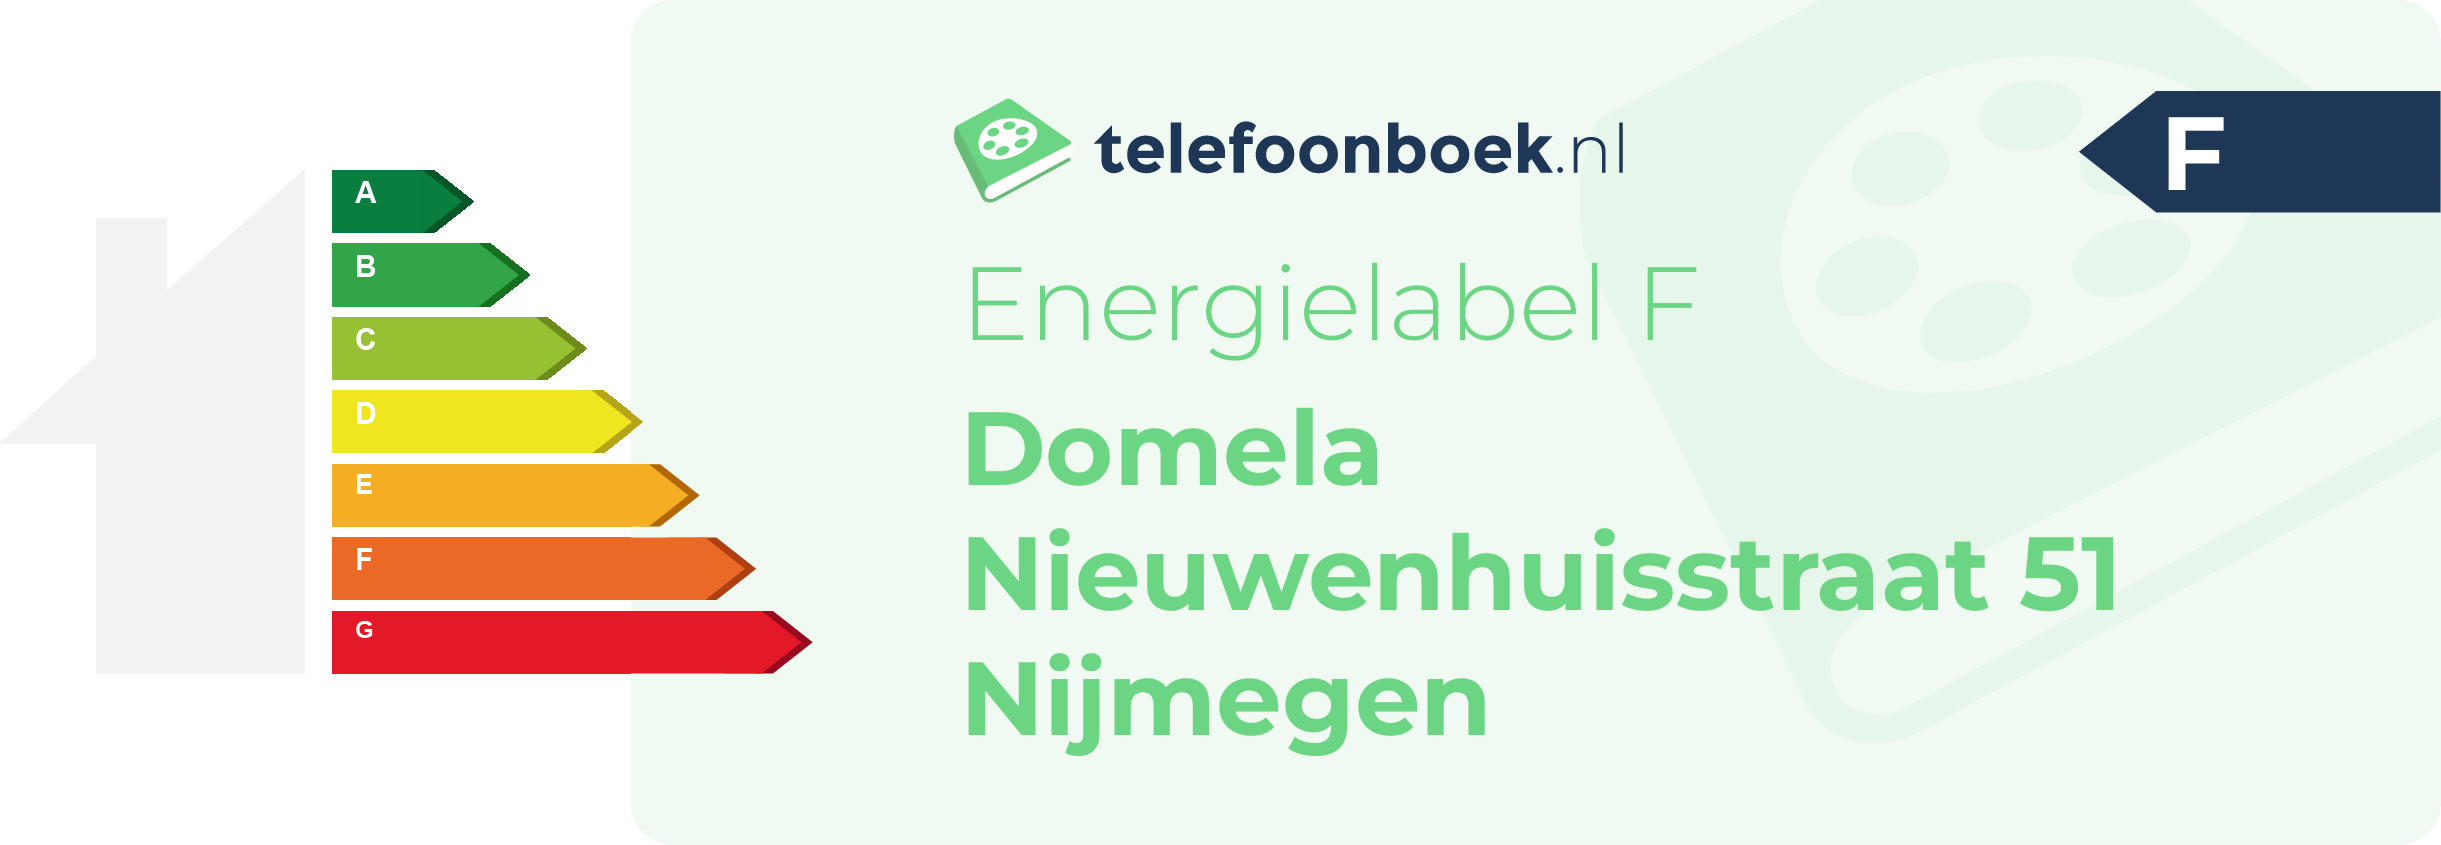 Energielabel Domela Nieuwenhuisstraat 51 Nijmegen